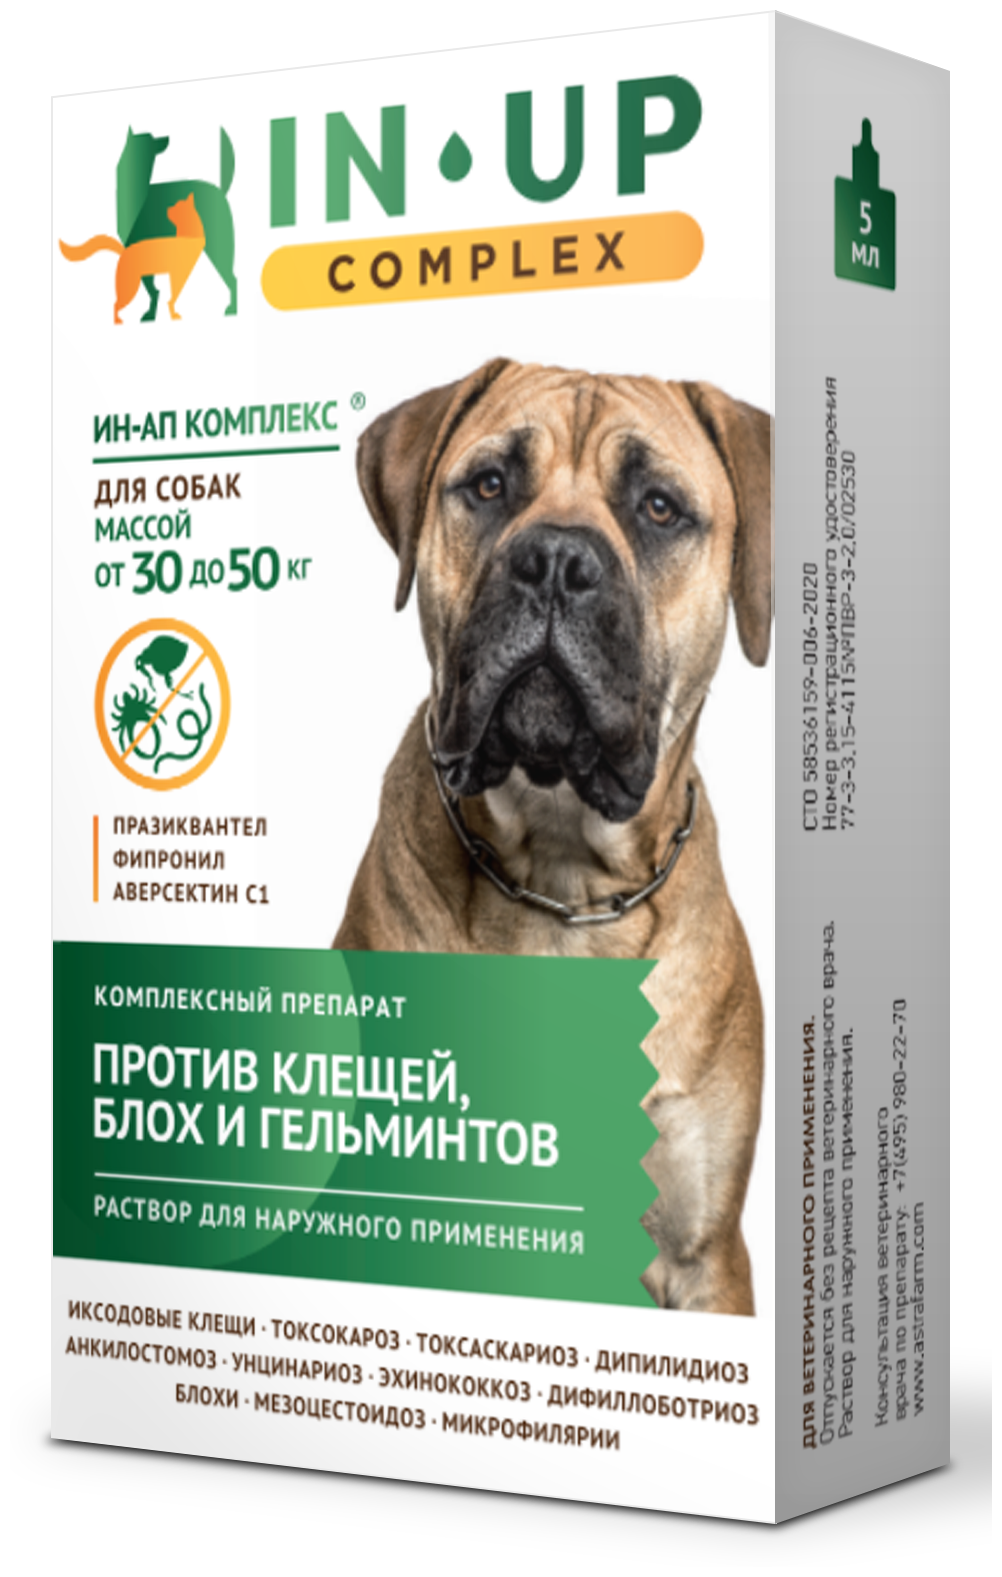 Астрафарм  Капли против экто- и эндопаразитов ИН-АП для собак массой от 30 до 50 кг 1 шт. в уп., 1 уп.